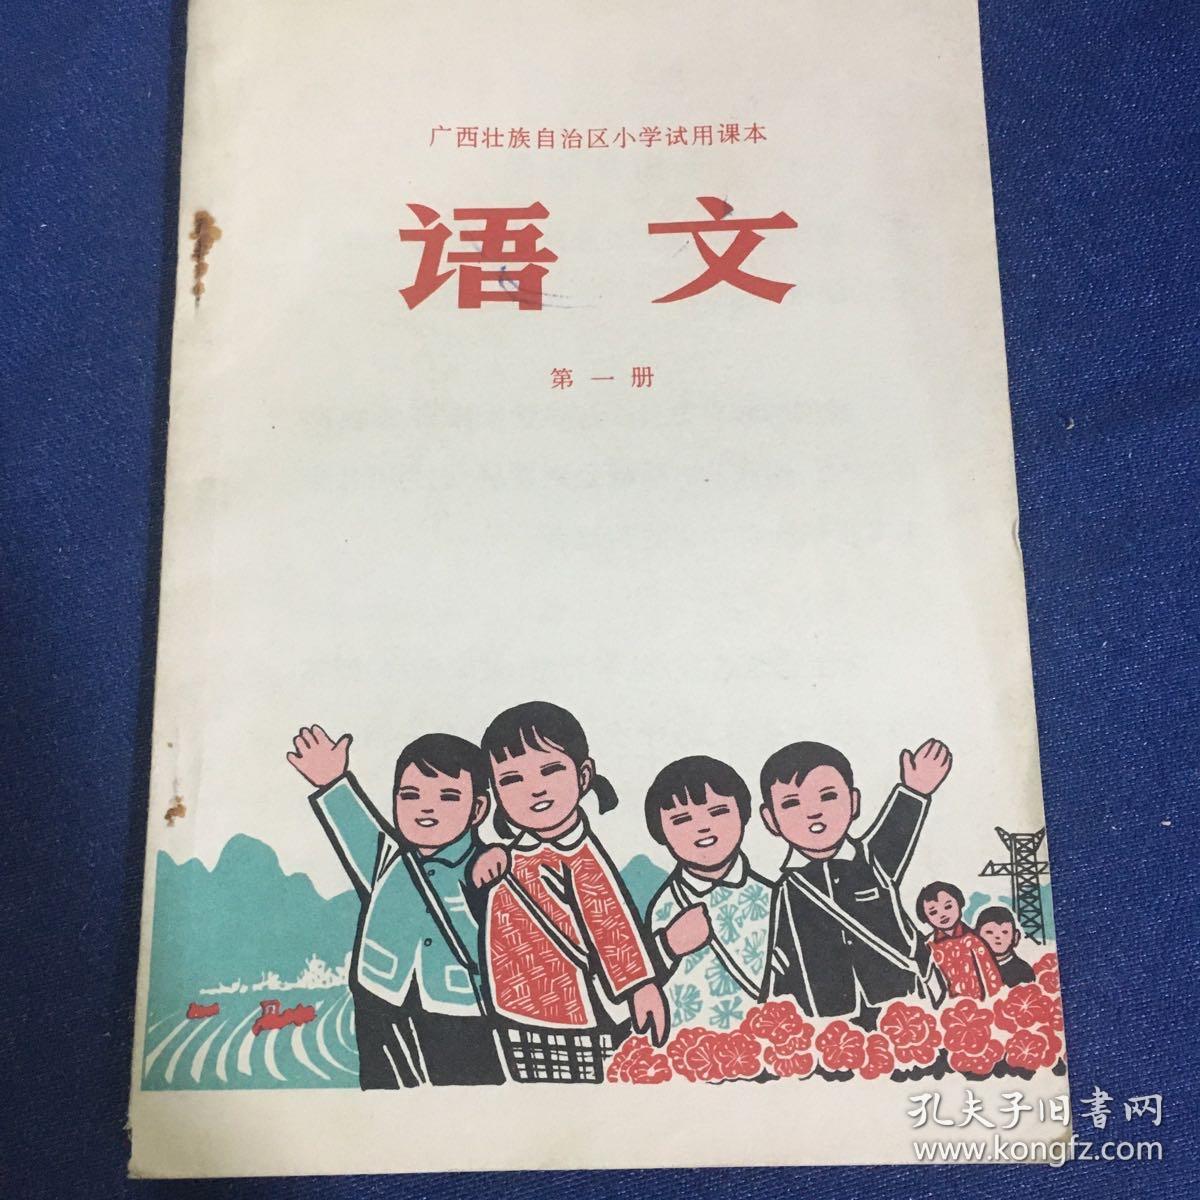 广西壮族自治区小学试用课本 语文 第一册、第九册2本合售